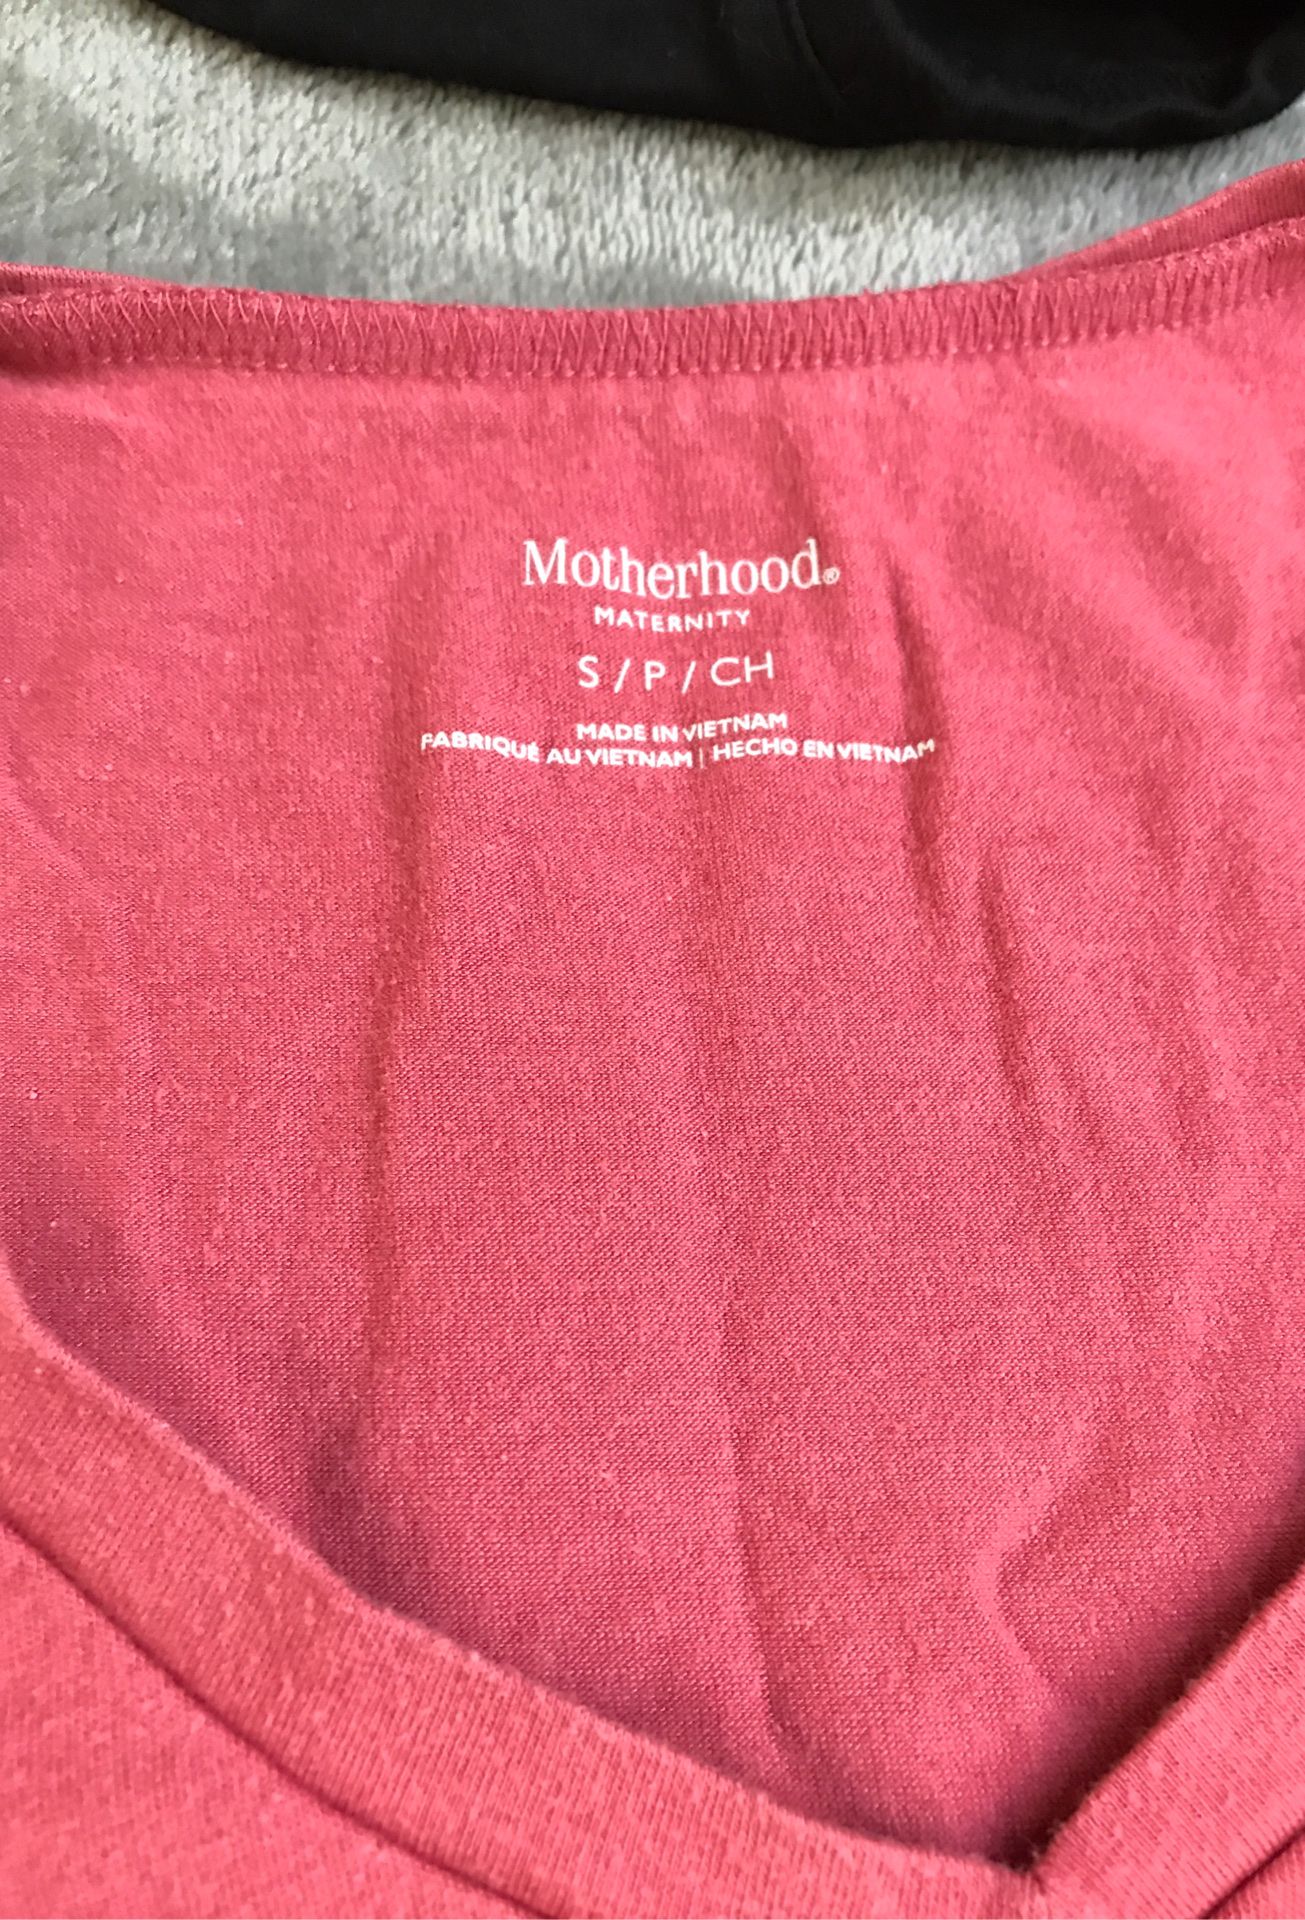 Motherhood maternity t shirt size small